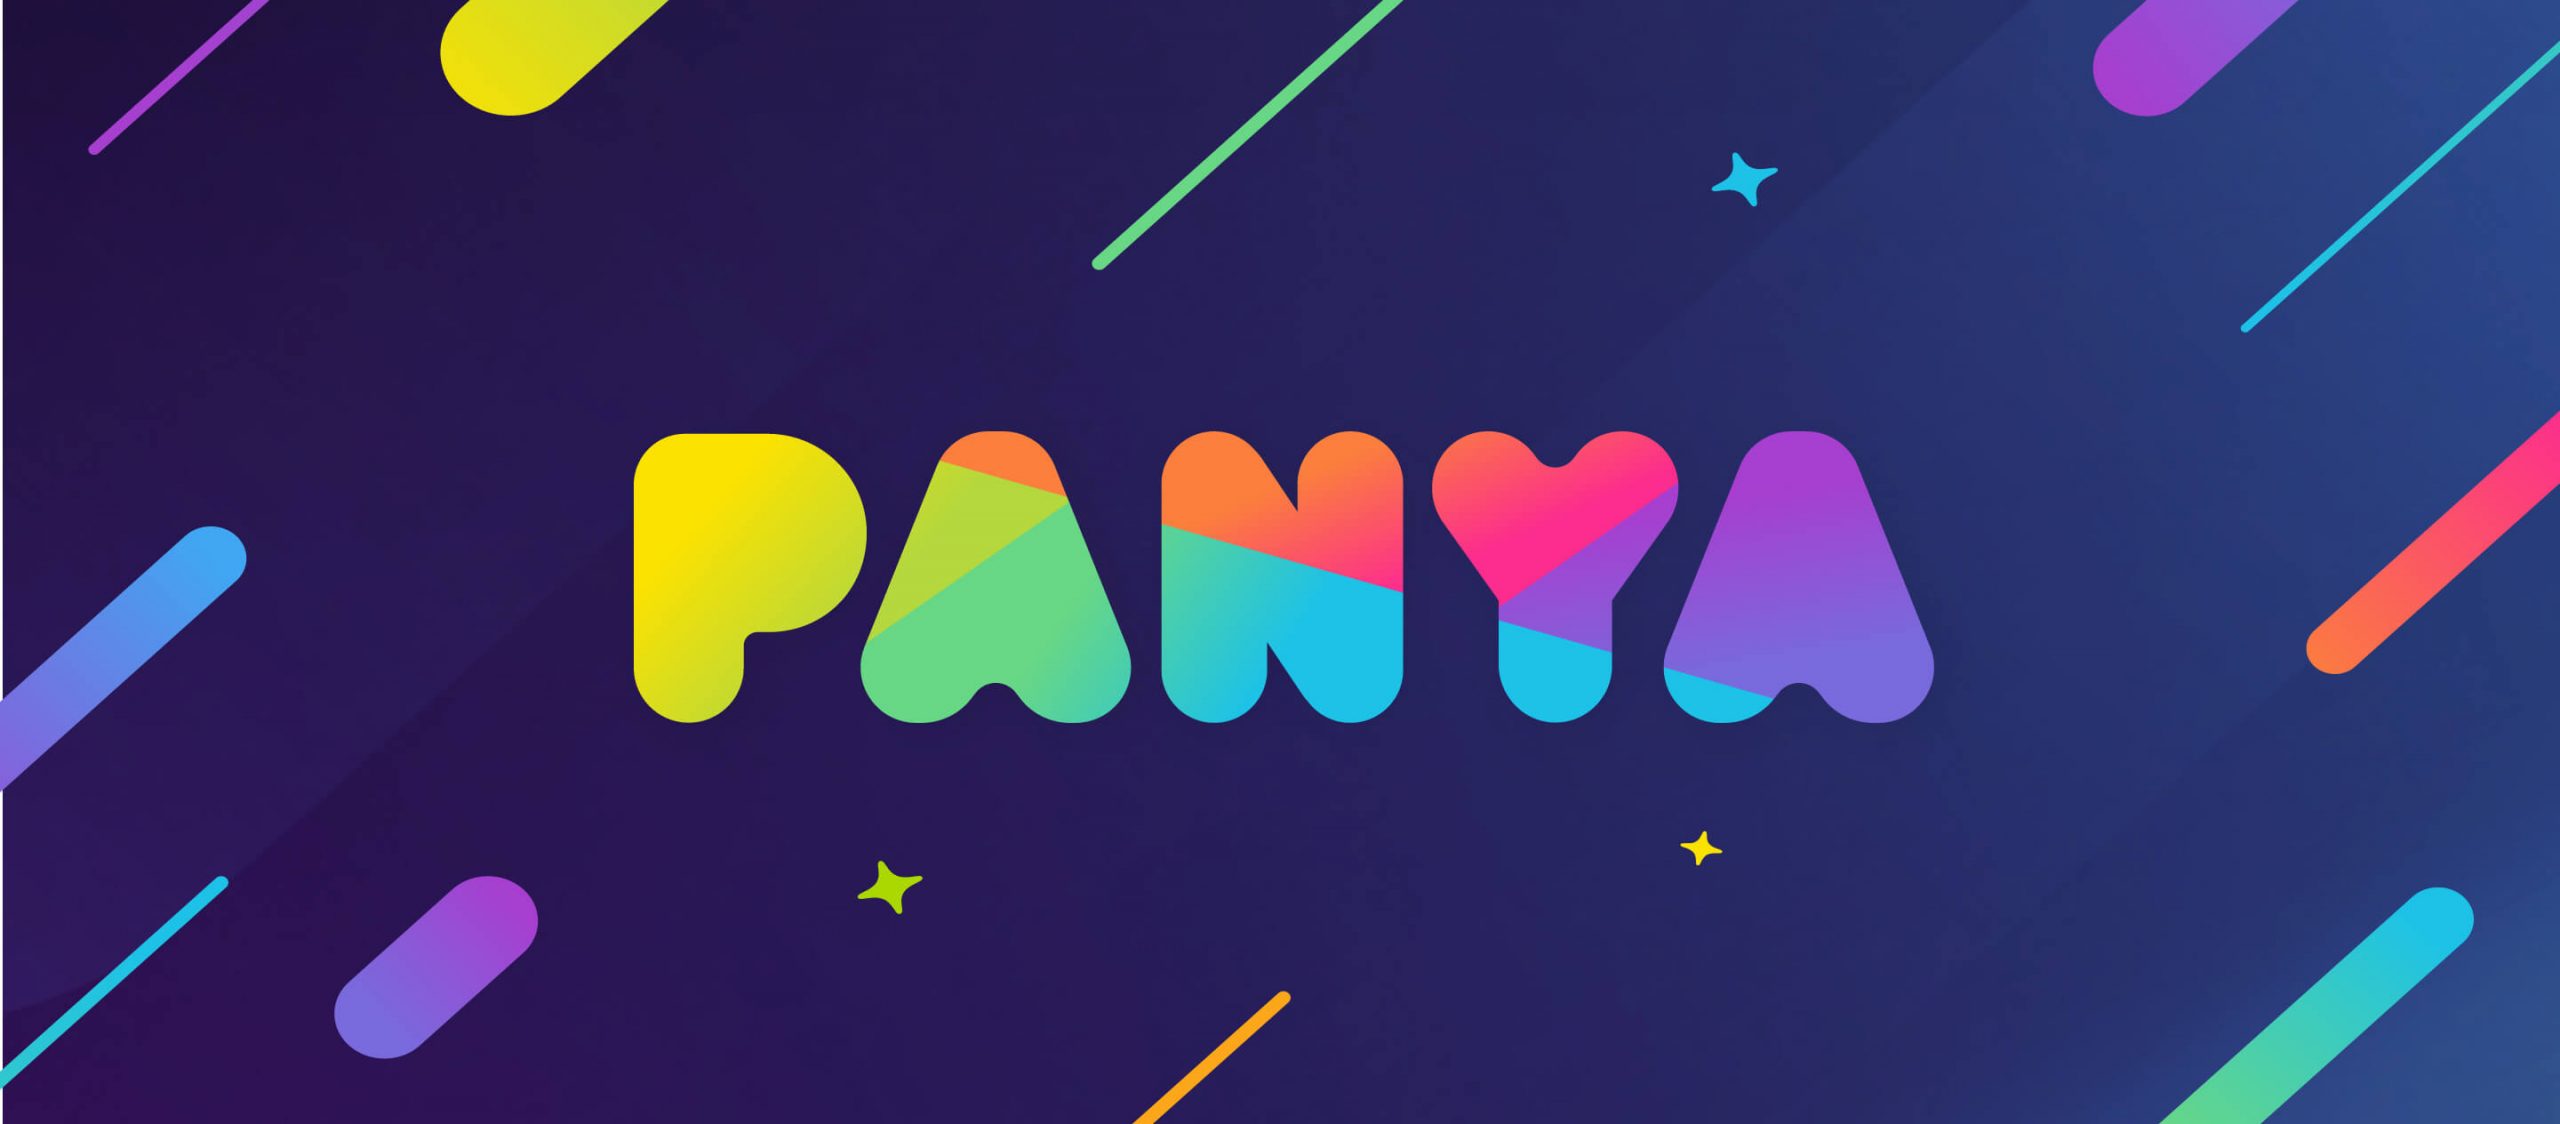 ถาม-ตอบ 12 ข้อเรื่อง ‘Panya’ เกมตอบคำถามที่แจกเงินรางวัลแถมปัญญา